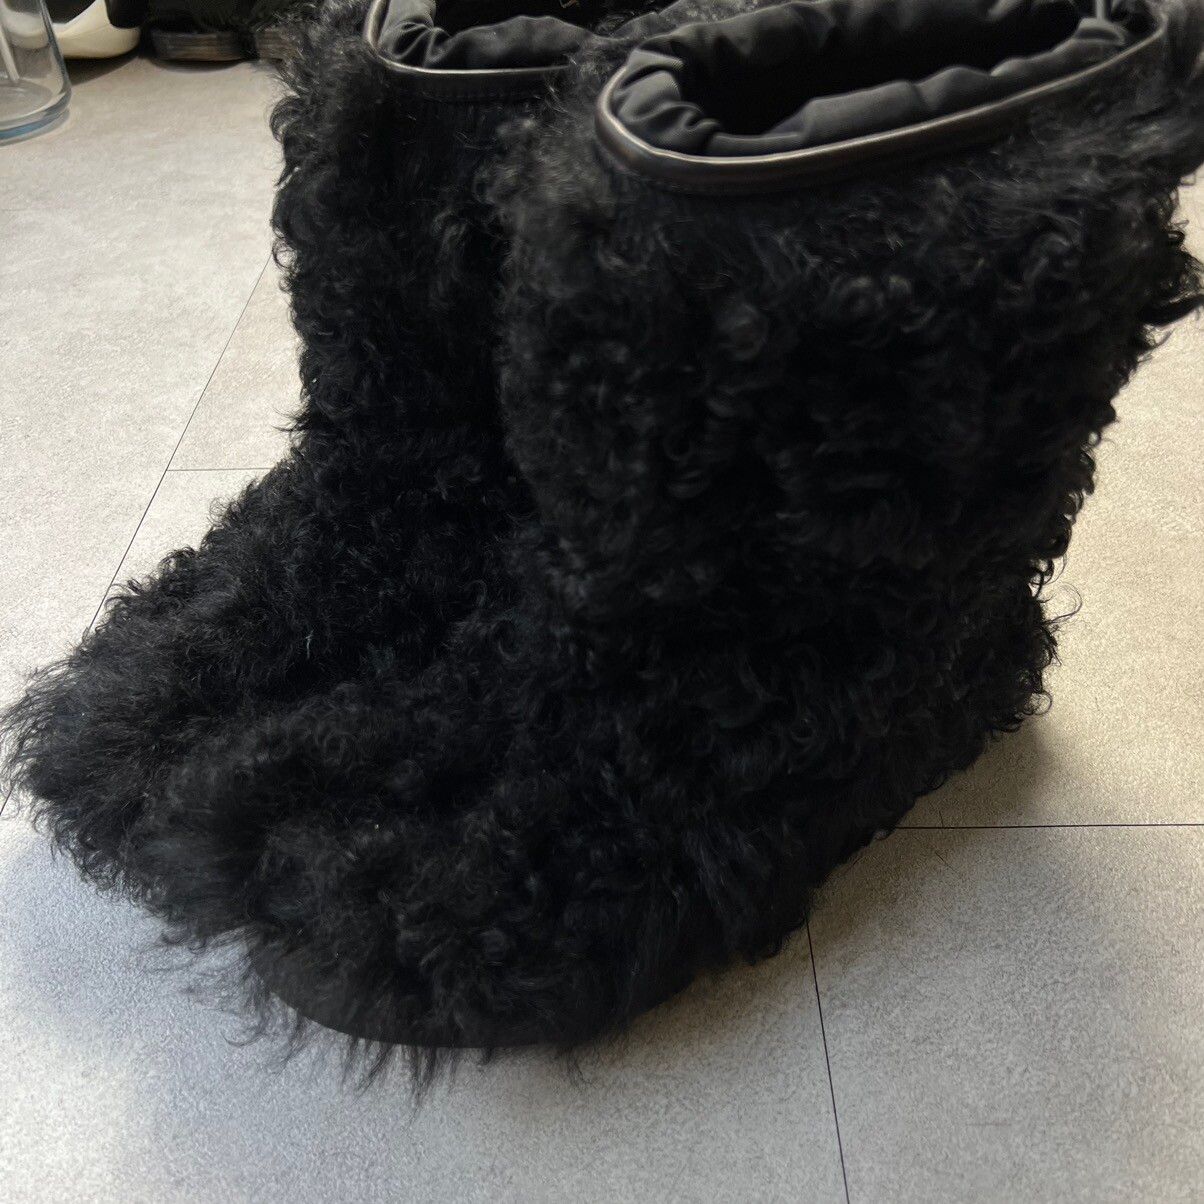 Prada Prada Sport Fur Faux Snow Boots Size US 8 / EU 41 - 2 Preview